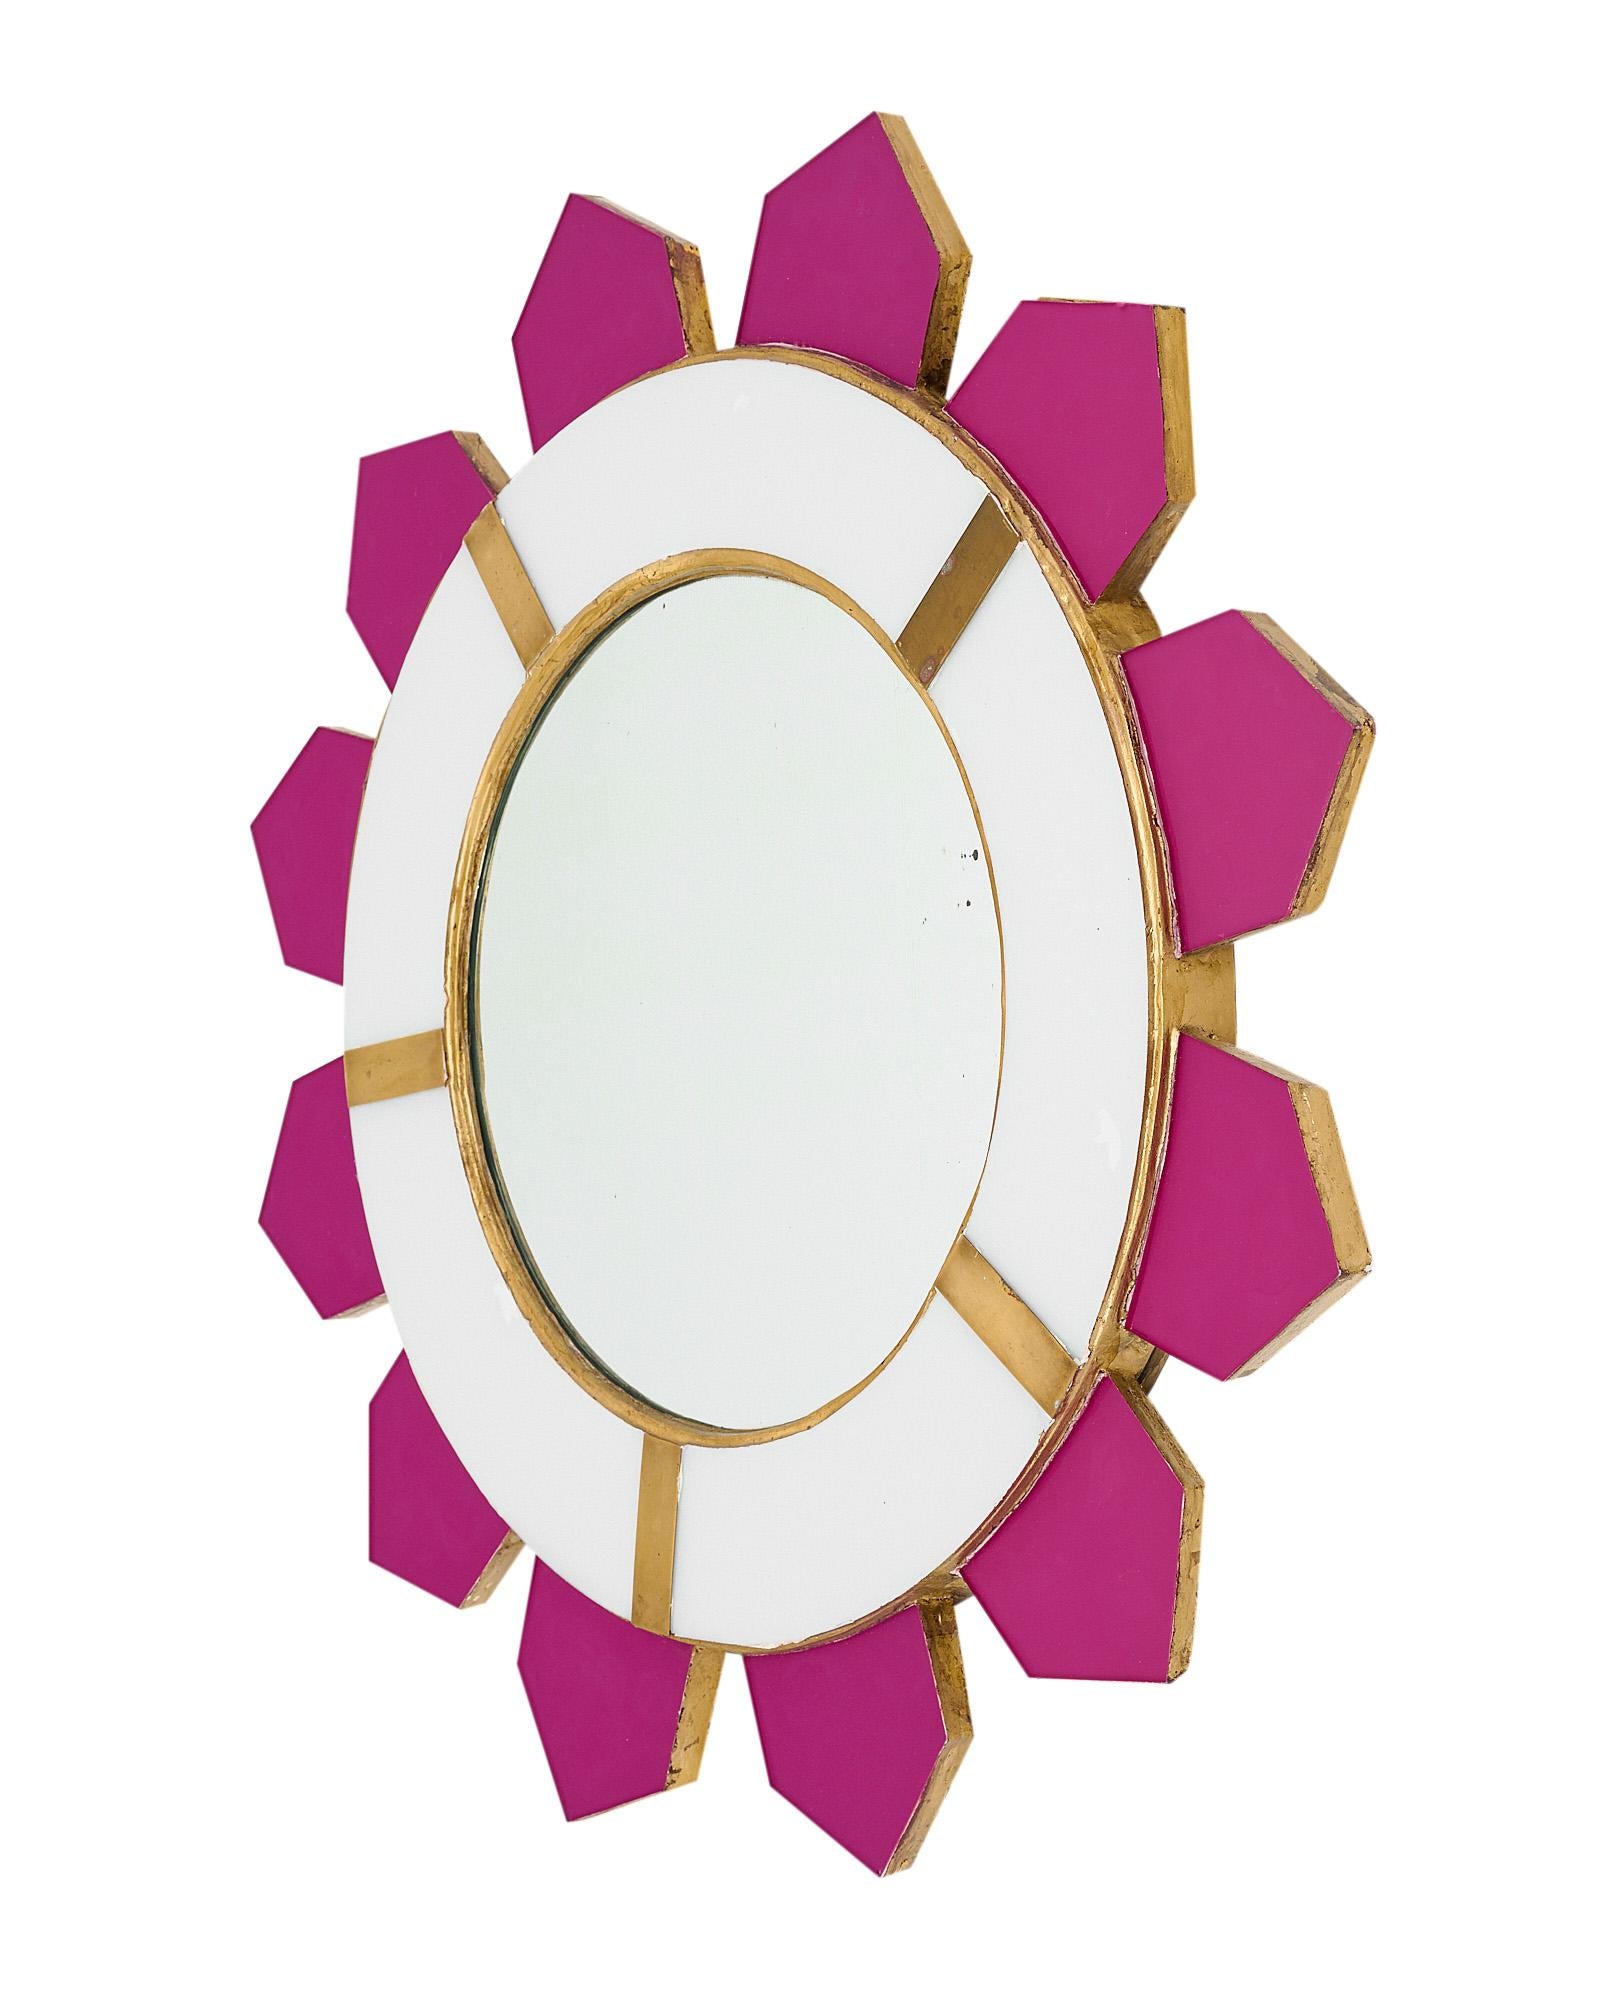 Rayon de soleil moderniste avec une structure en bois et des rayons plaqués de verre rose émanant d'un miroir circulaire central. Le miroir central est encadré d'éléments en verre blanc ainsi que d'un décor en laiton. Nous aimons le concept stylisé